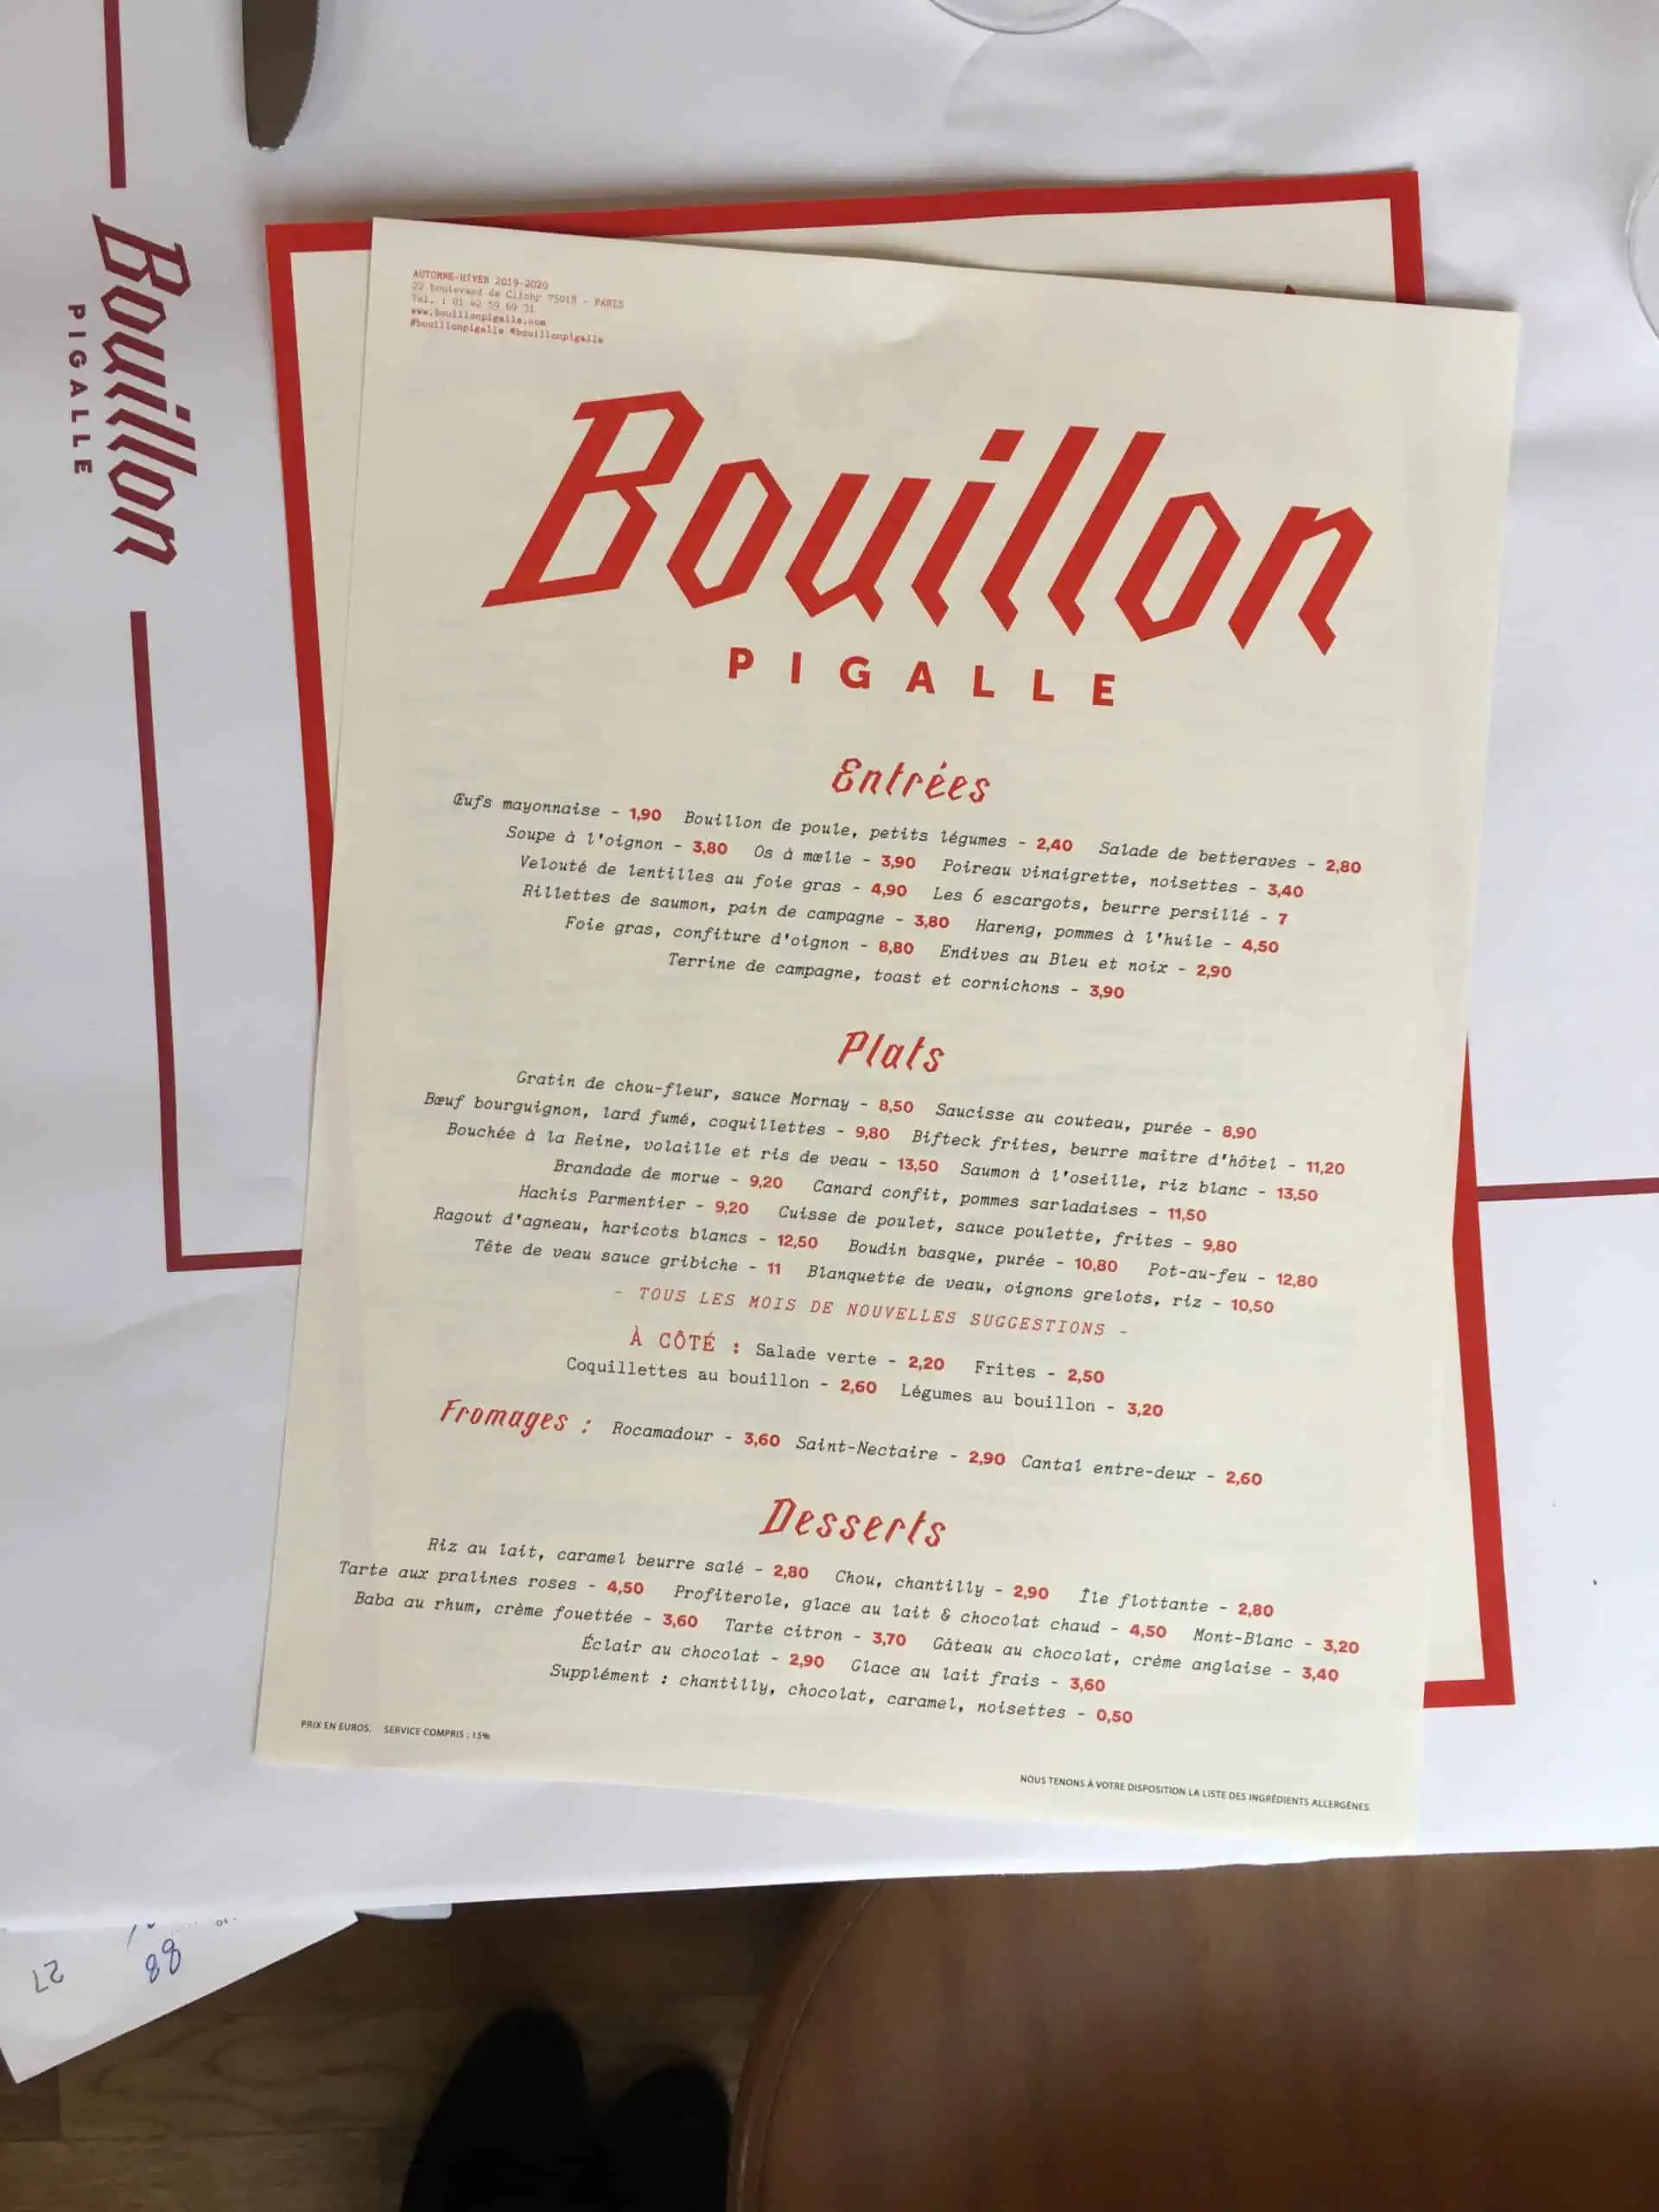 Bouillon Pigalle menu